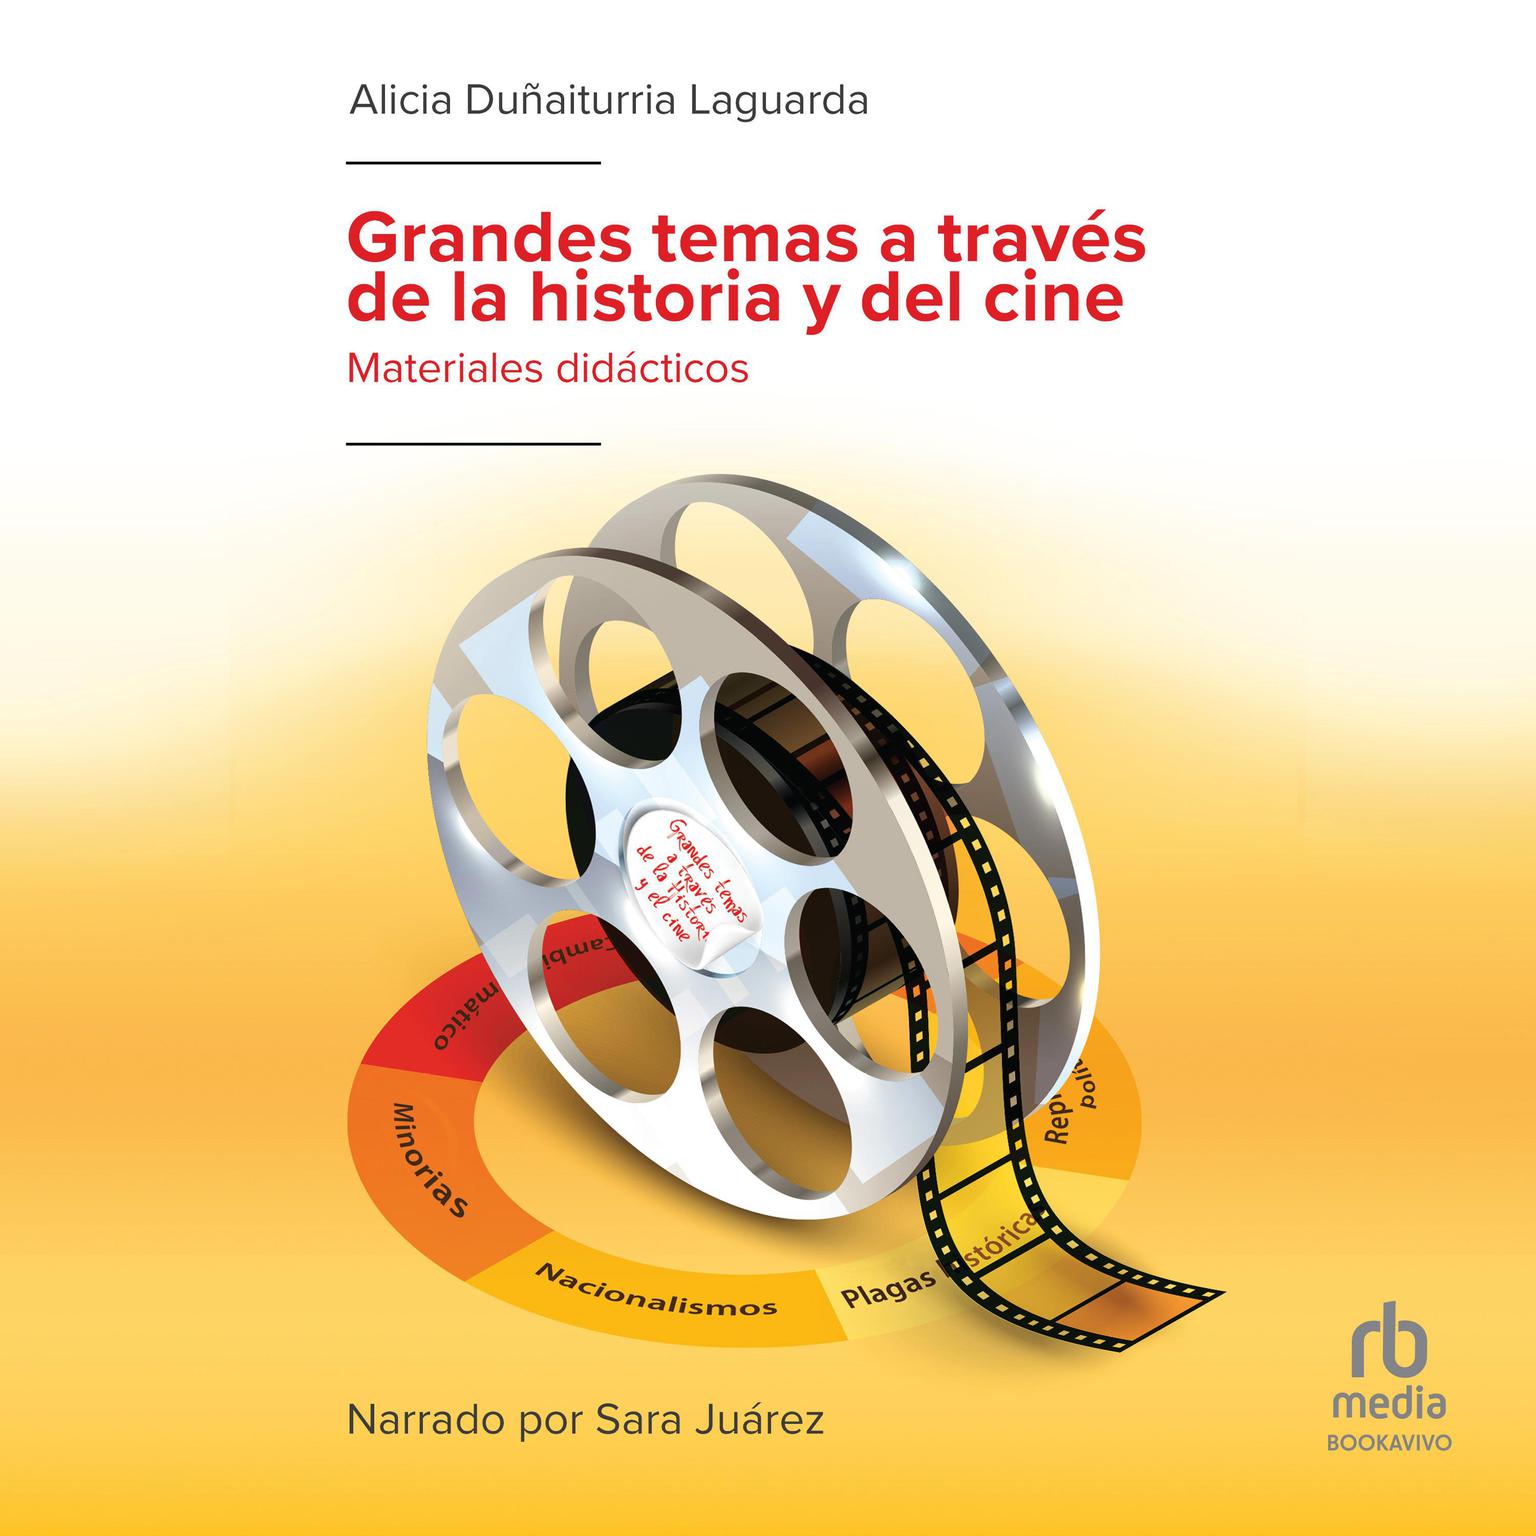 Grandes temas a través de la historia y del cine Audiobook, by Alicia Dunaiturria Laguarda